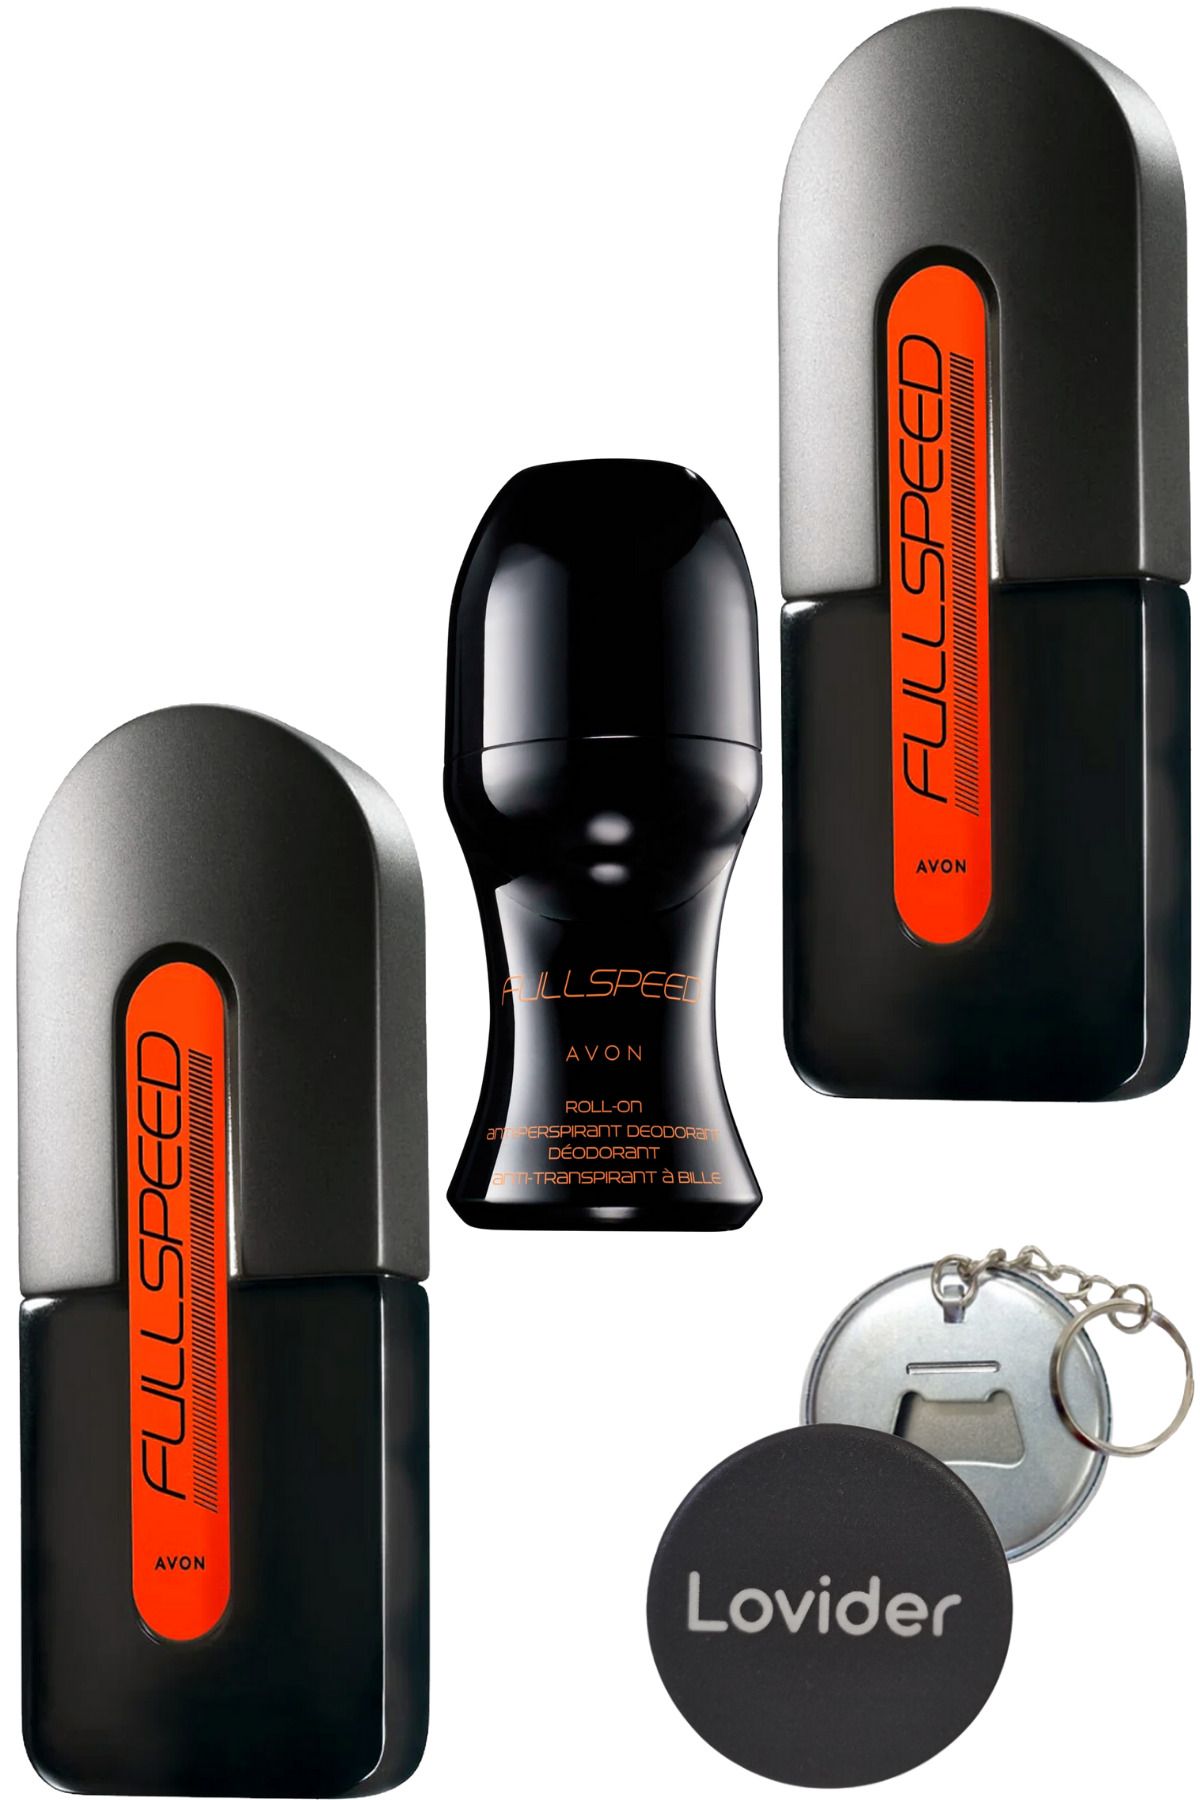 Avon Full Speed Parfüm EDT 75ml + Roll-on + Full Speed 75ml Erkek Parfüm + Lovider Anahtarlık